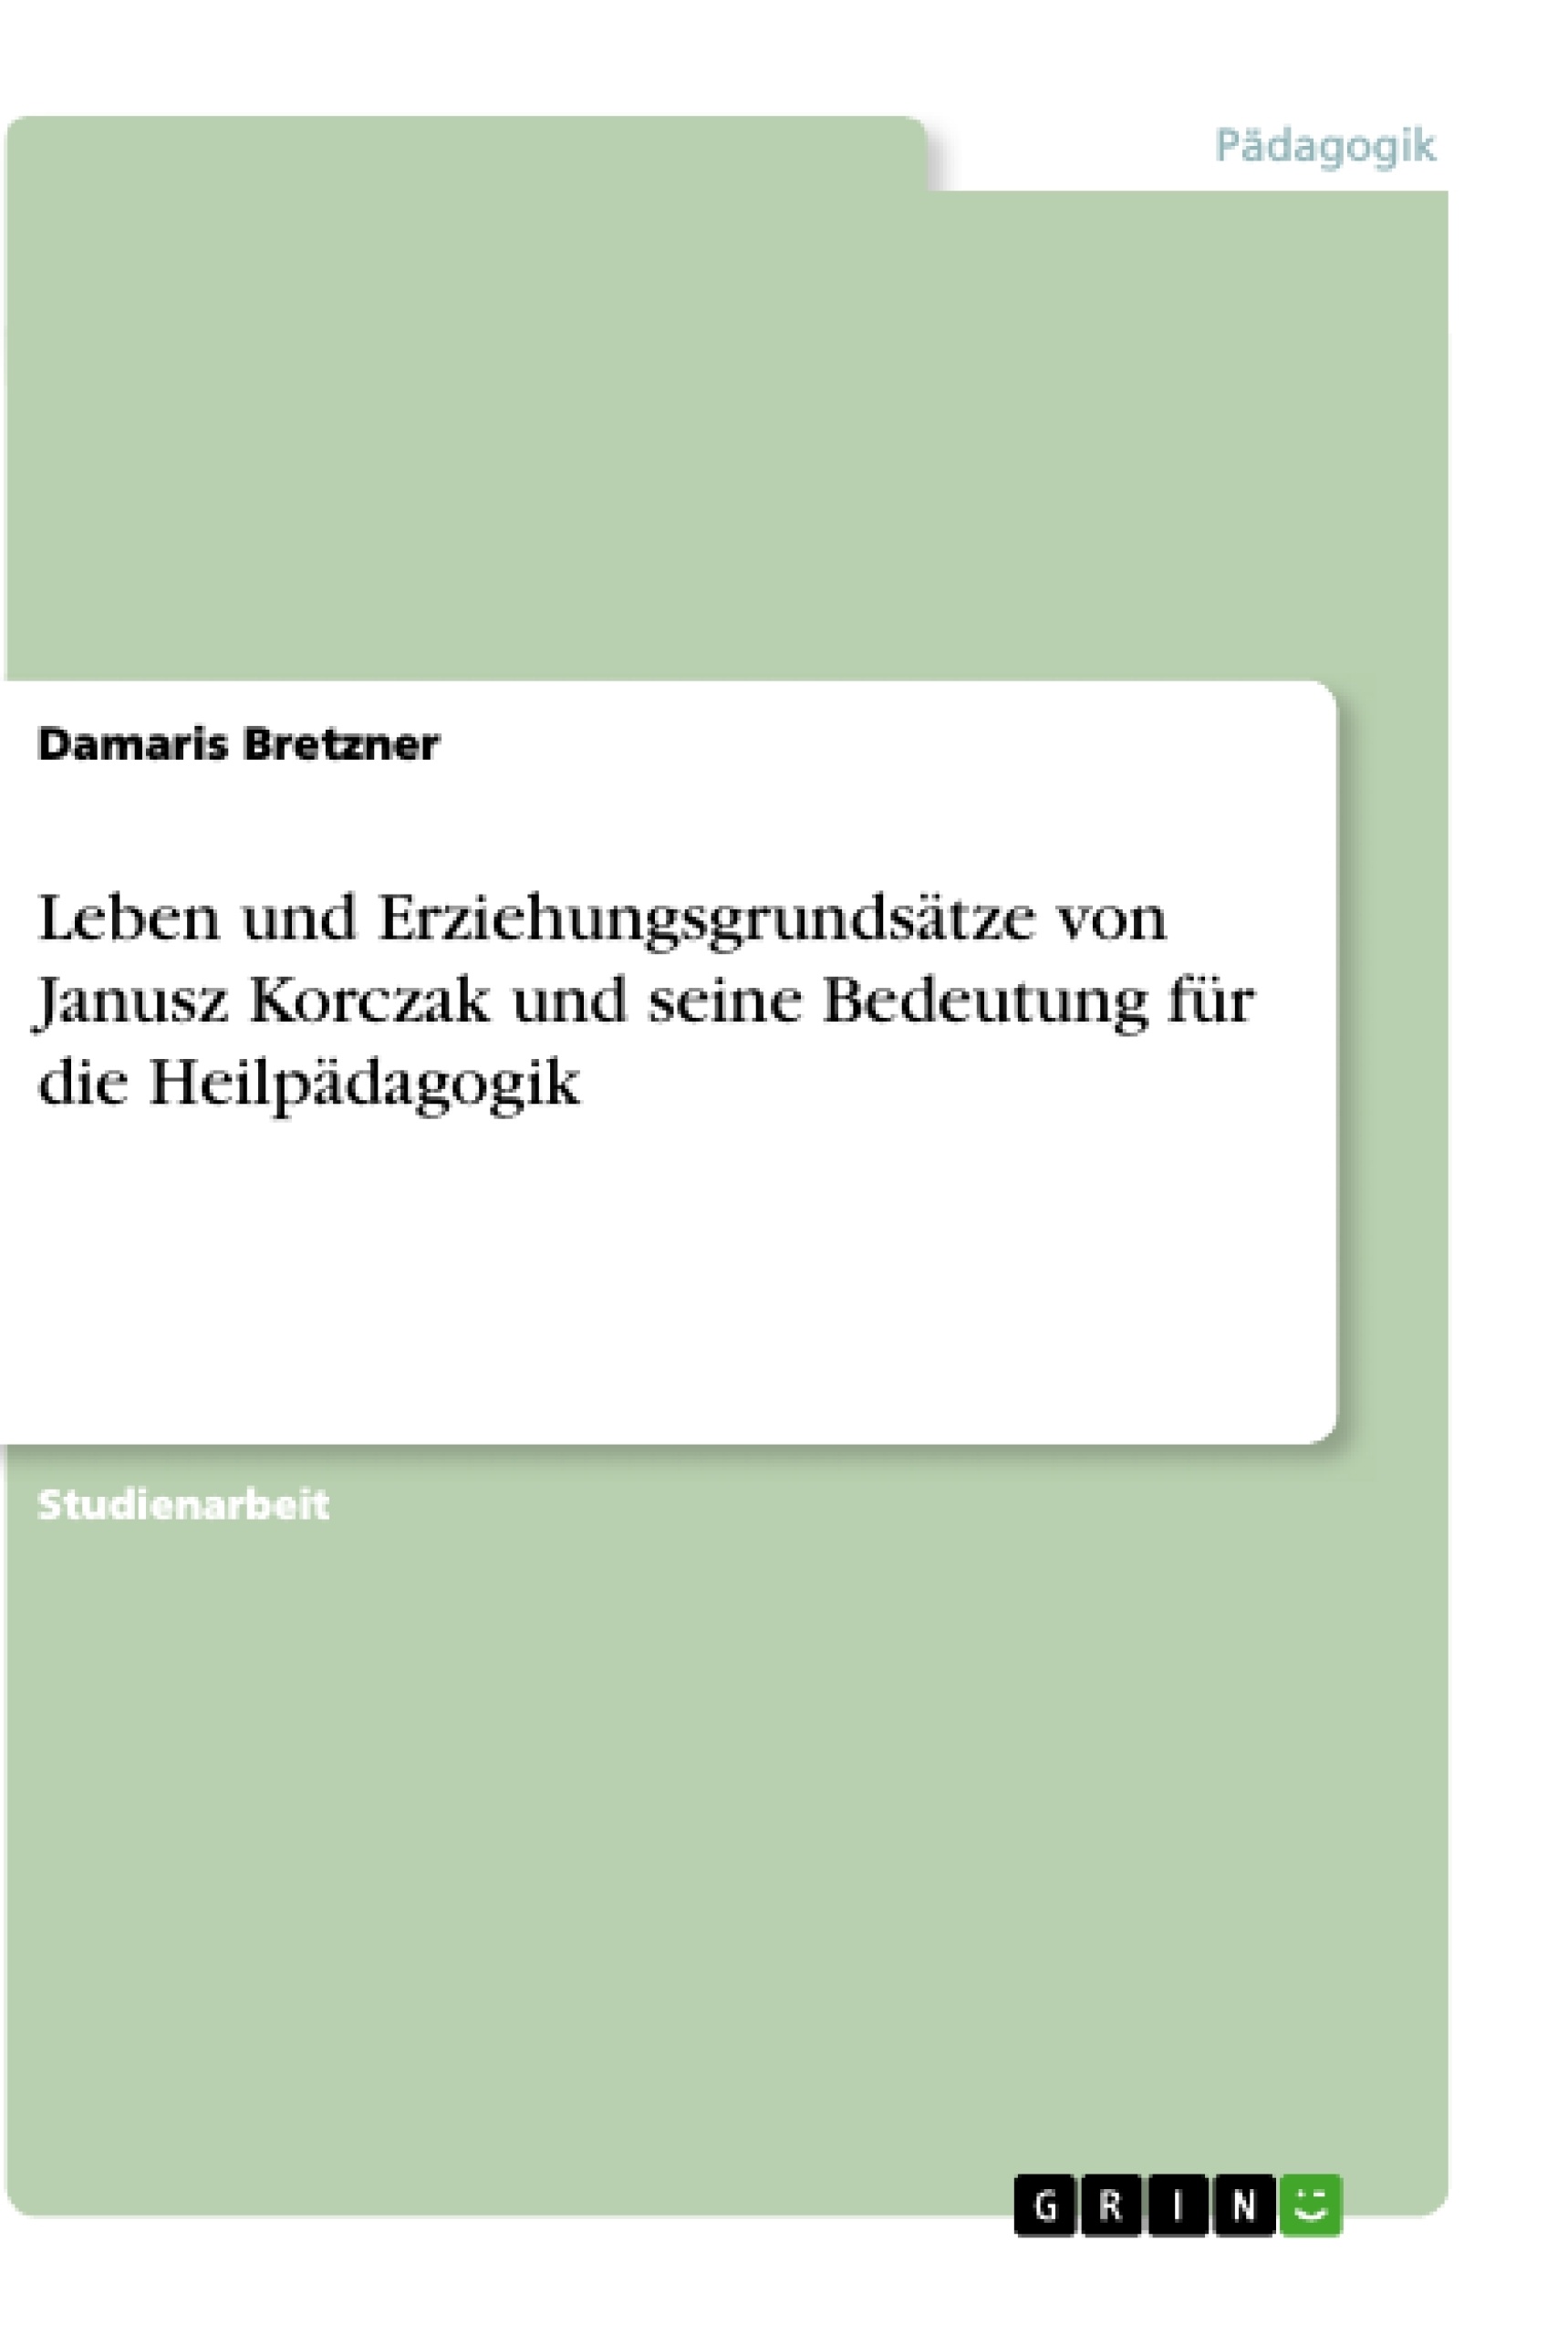 Title: Leben und Erziehungsgrundsätze von Janusz Korczak und seine Bedeutung für die Heilpädagogik